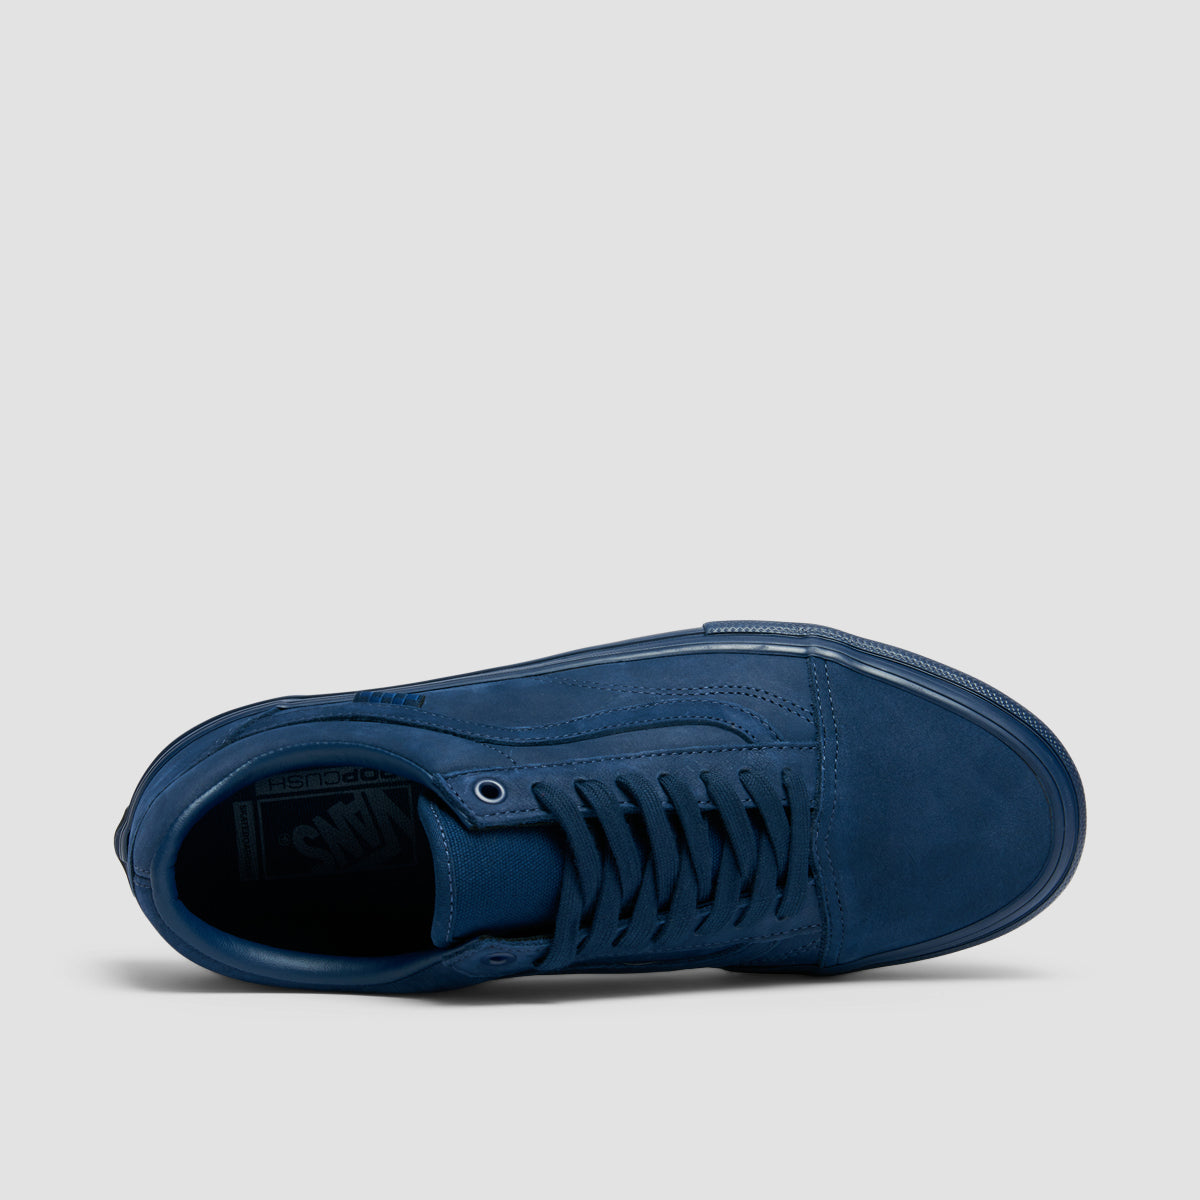 Vans Skate Old Skool Shoes - Mono Dark Blue